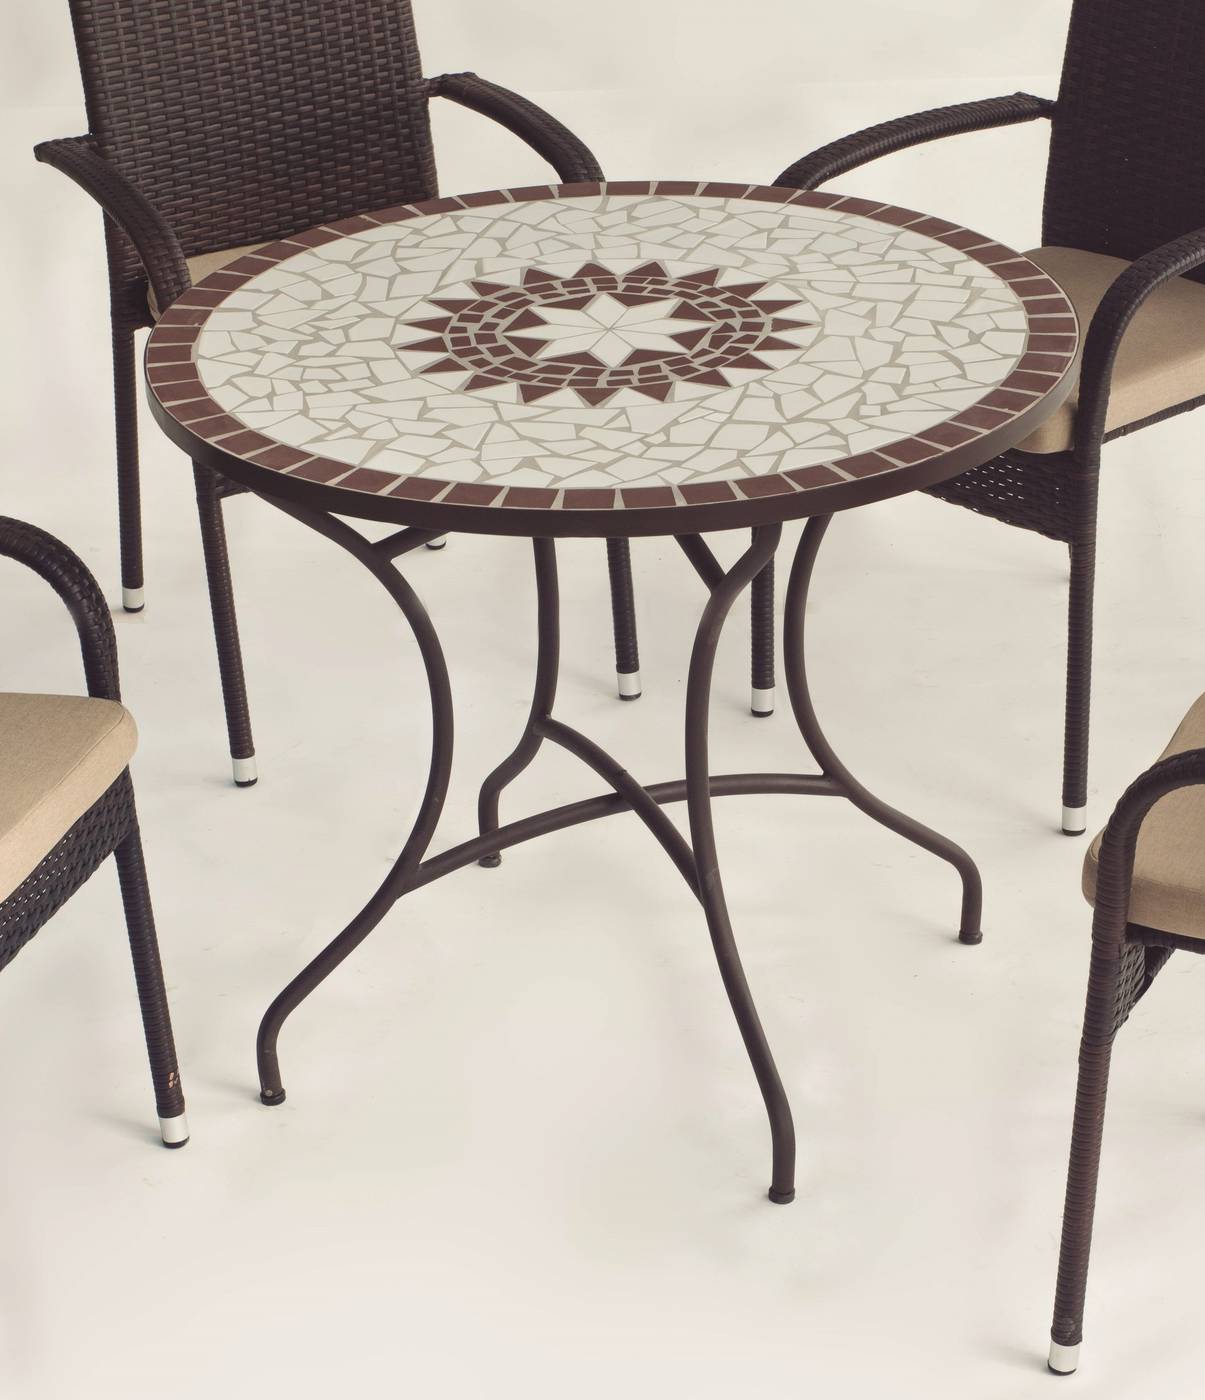 Conjunto Mosaico Estela90-Bahia - Conjunto de forja color marrón: mesa con tablero mosaico de 90 cm + 4 sillones de ratán sintético con cojines.